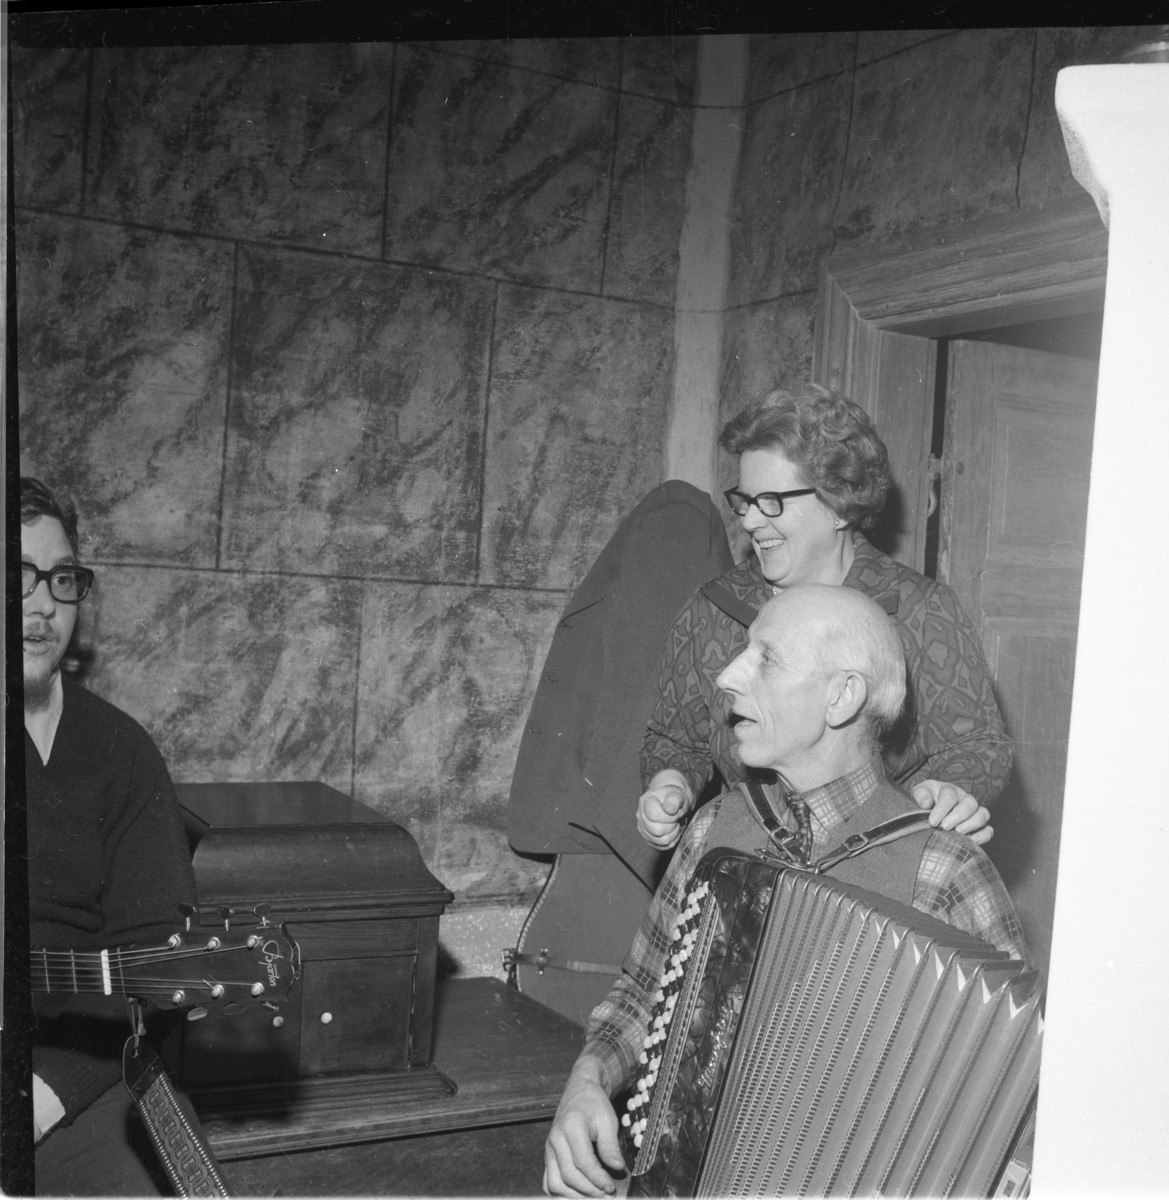 En man spelar dragspel, en kvinna står bakom honom och skrattar. En med man gitarr skymtar till vänster. Det är Ölmstad hembygdsförenings julfest.